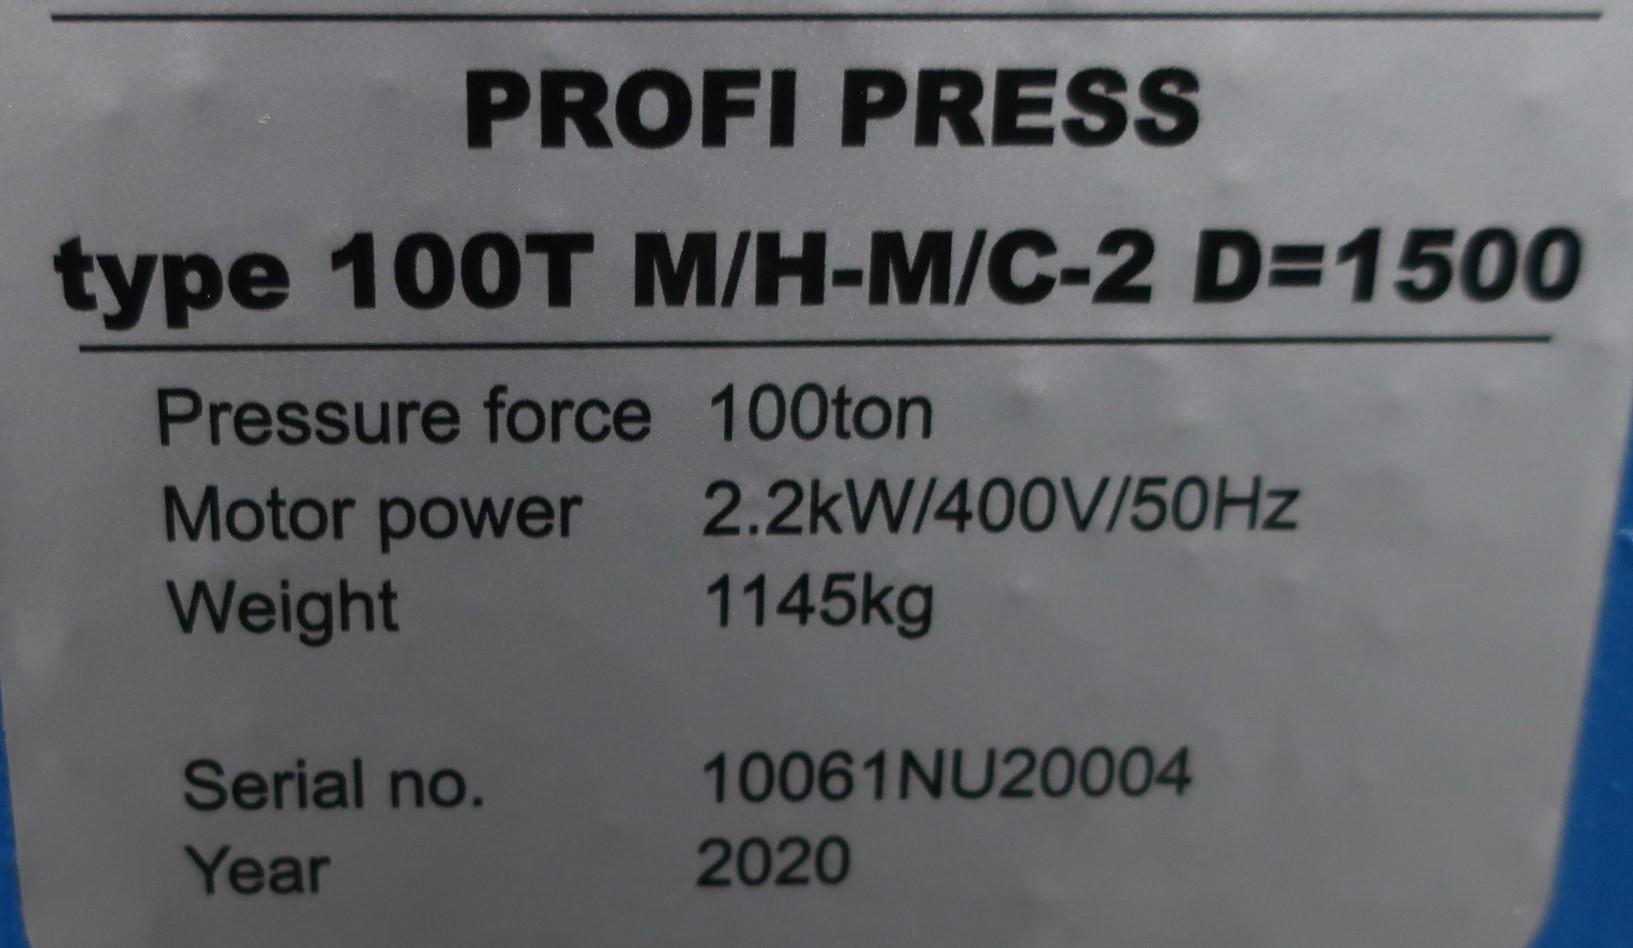 Presses (General)/Profi Press - M/H-M/C-2 D=1500